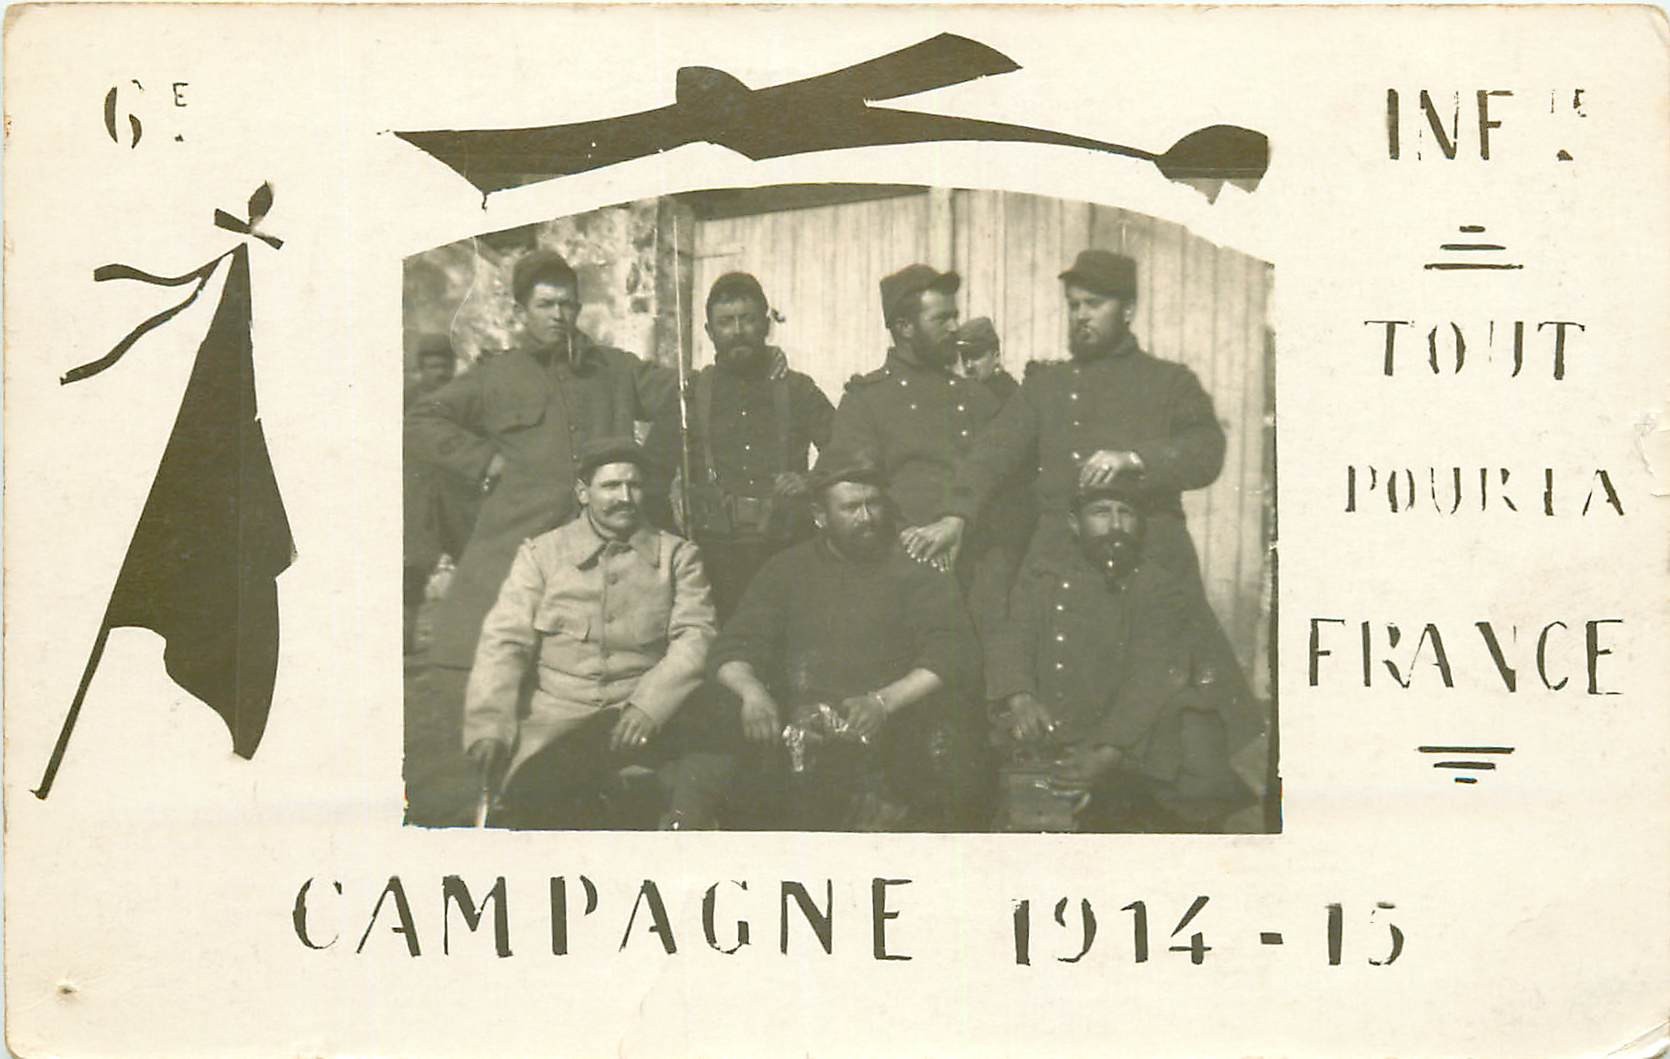 WW MILITAIRES. Campagne 1914-15 Poilus du 6° Infanterie " Tout pour la France "